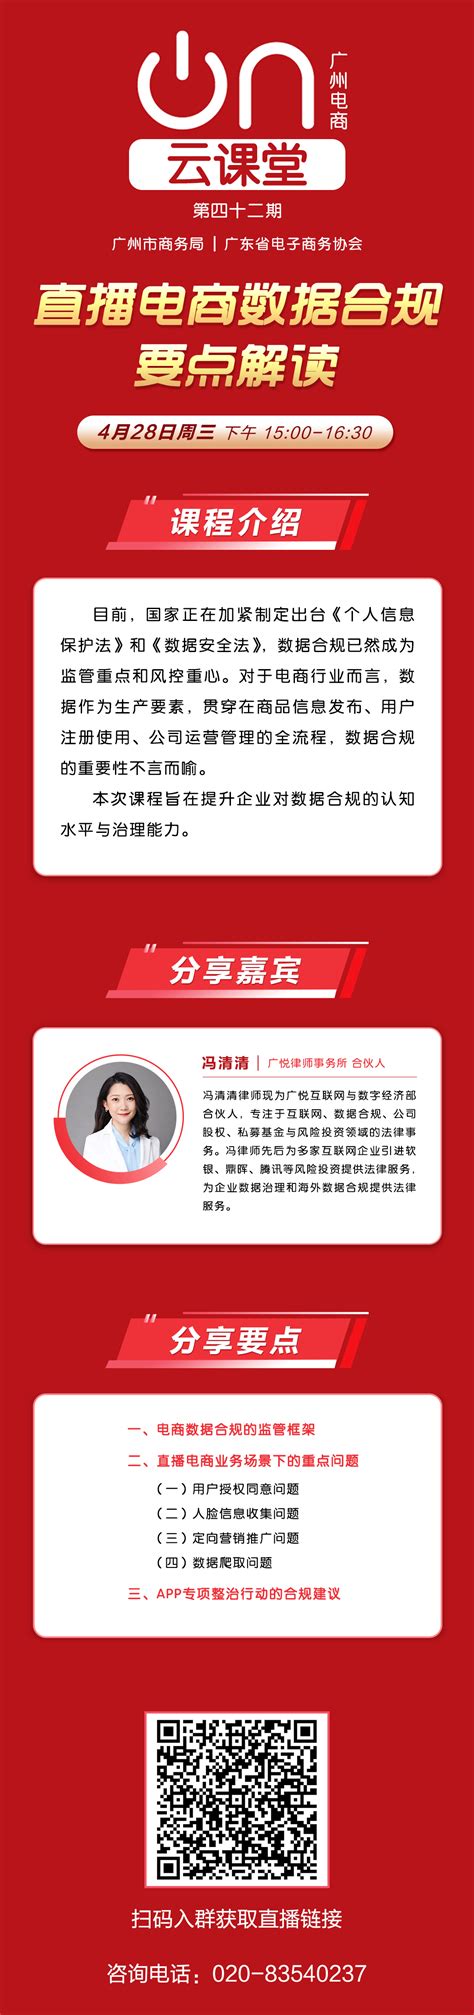 广州打造全国著名直播电商之都 未来三年孵化千个网红品牌 - C2CC传媒